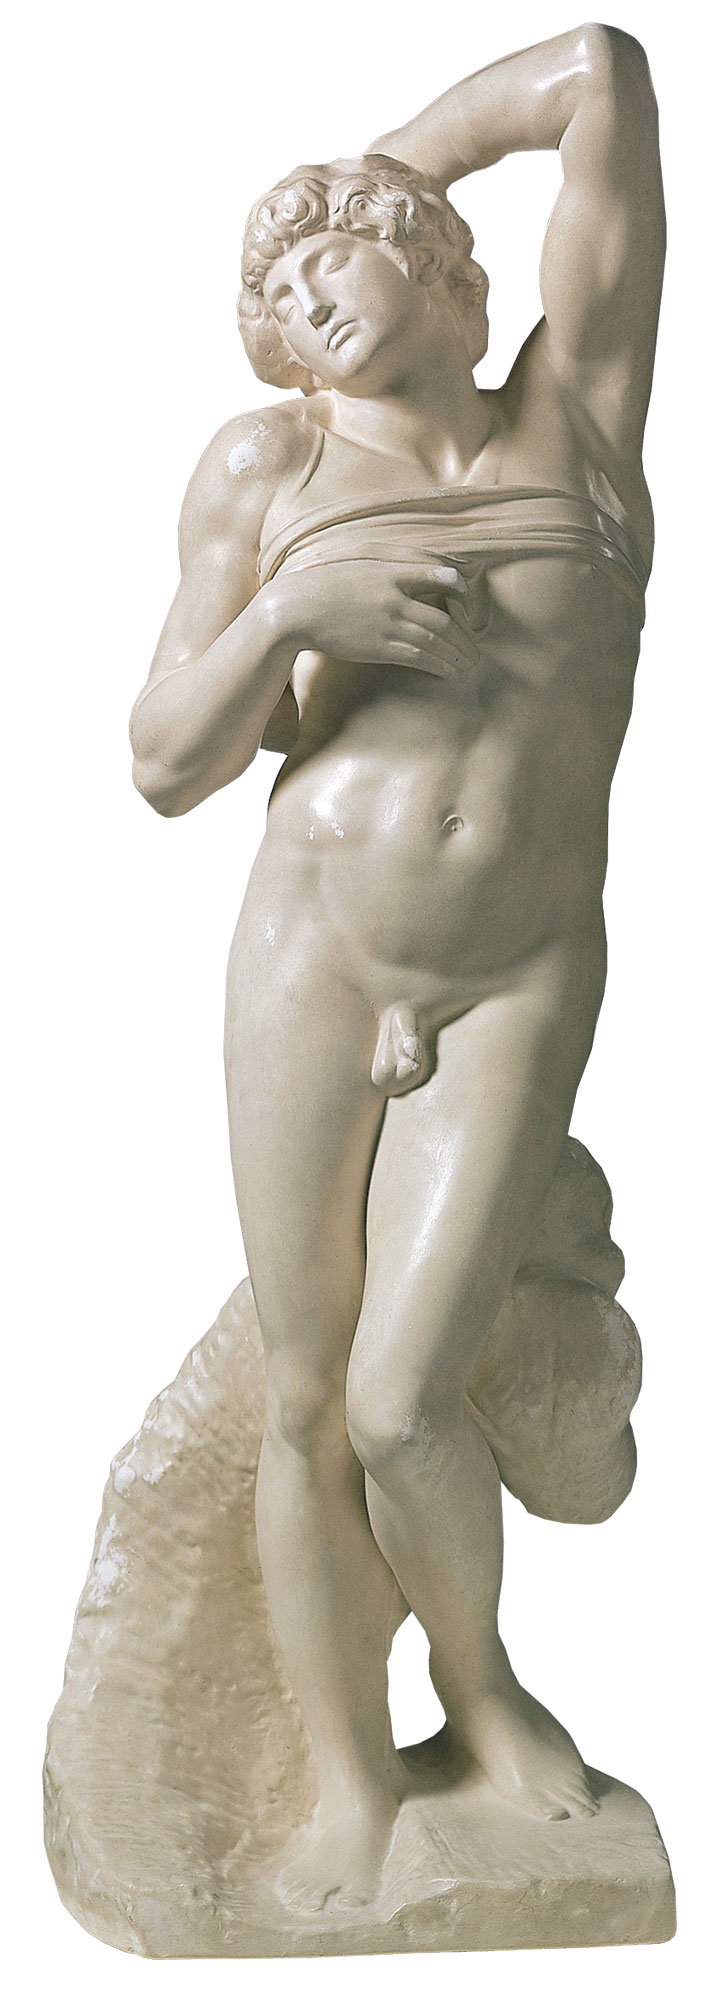 Skulptur "Sterbender Sklave" (1513), Reduktion in Kunstmarmor